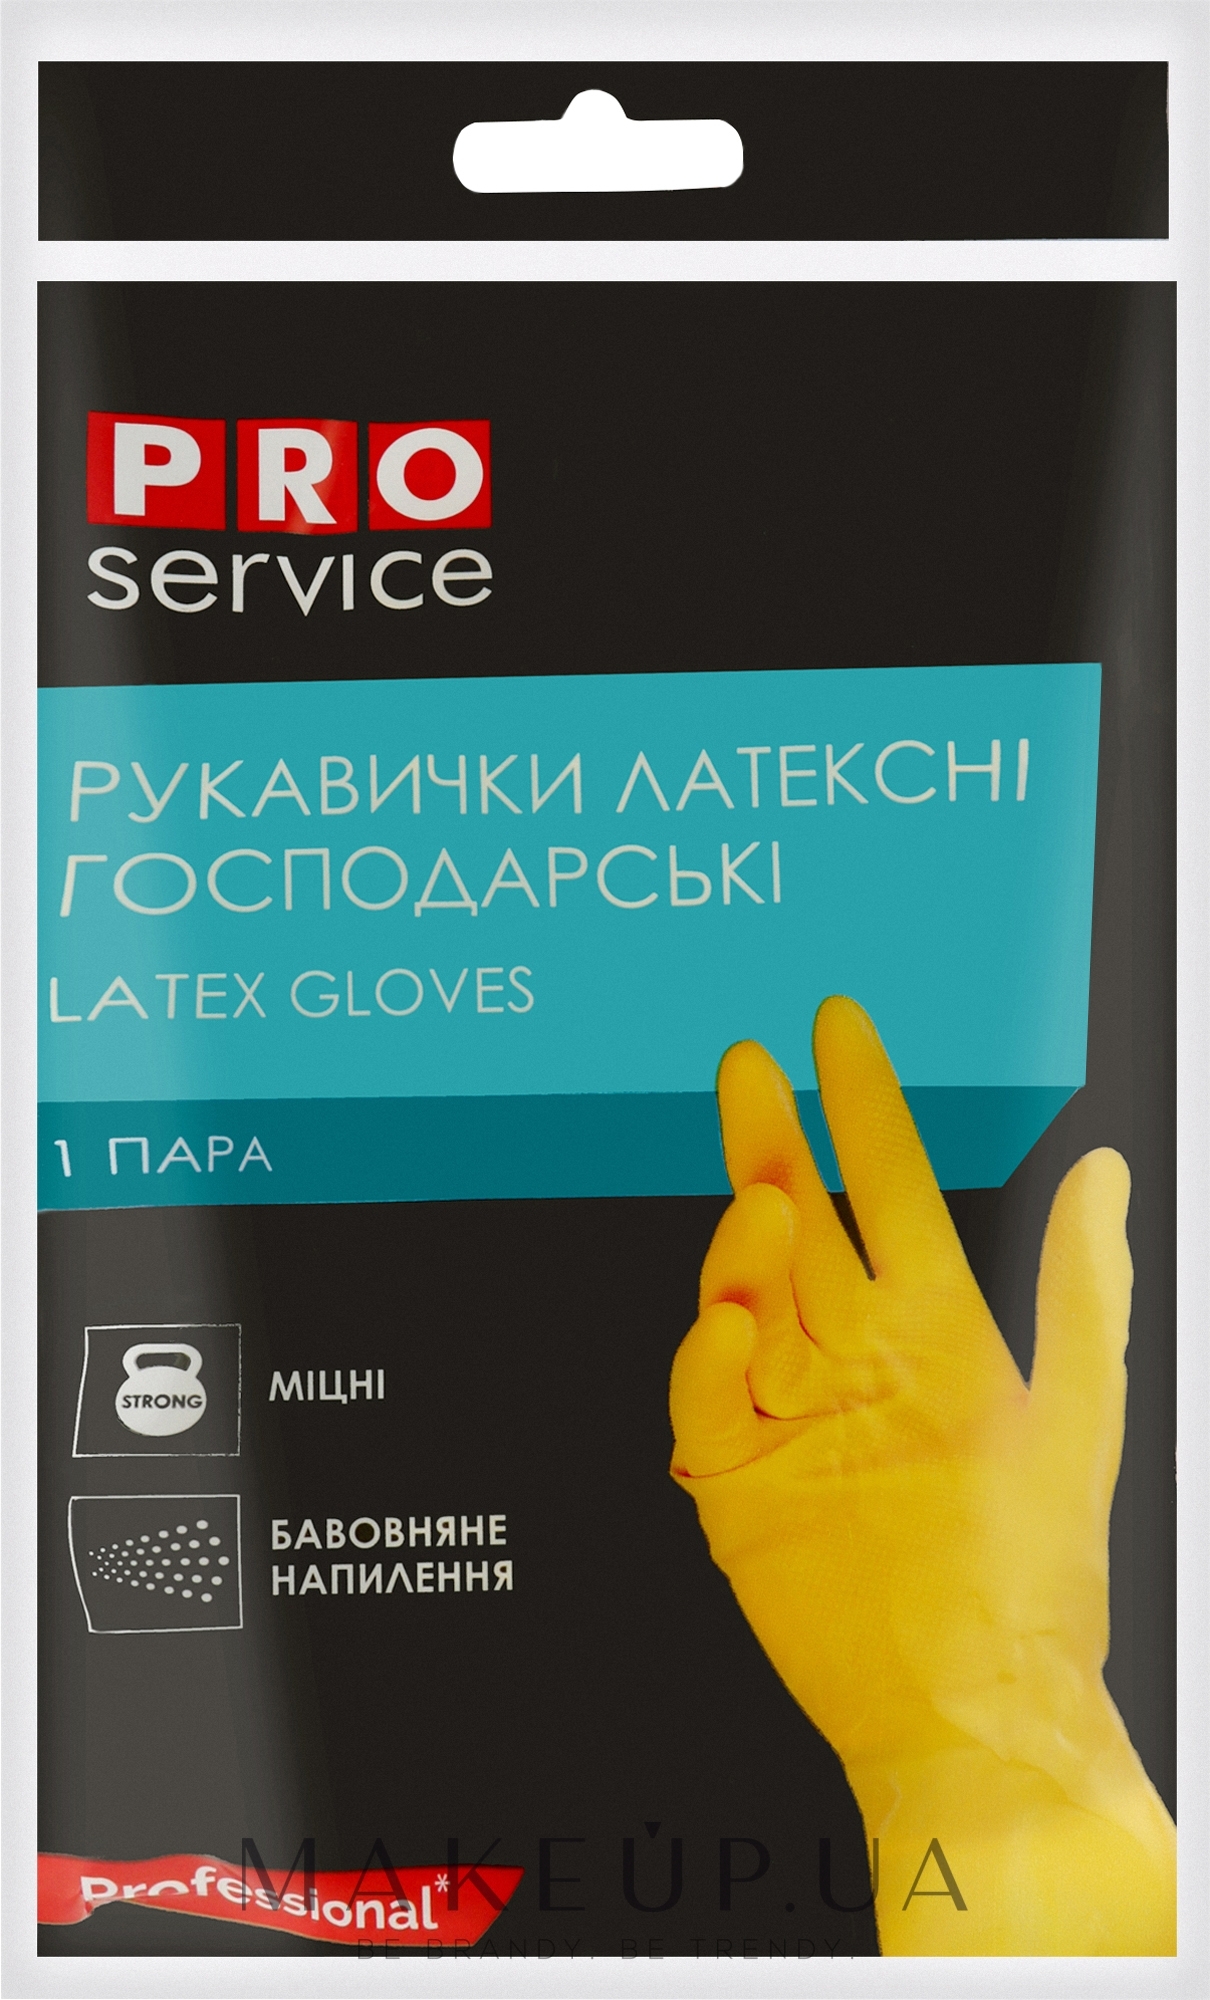 Перчатки латексные хозяйственные крепкие, размер L - PRO service Standart — фото 2шт